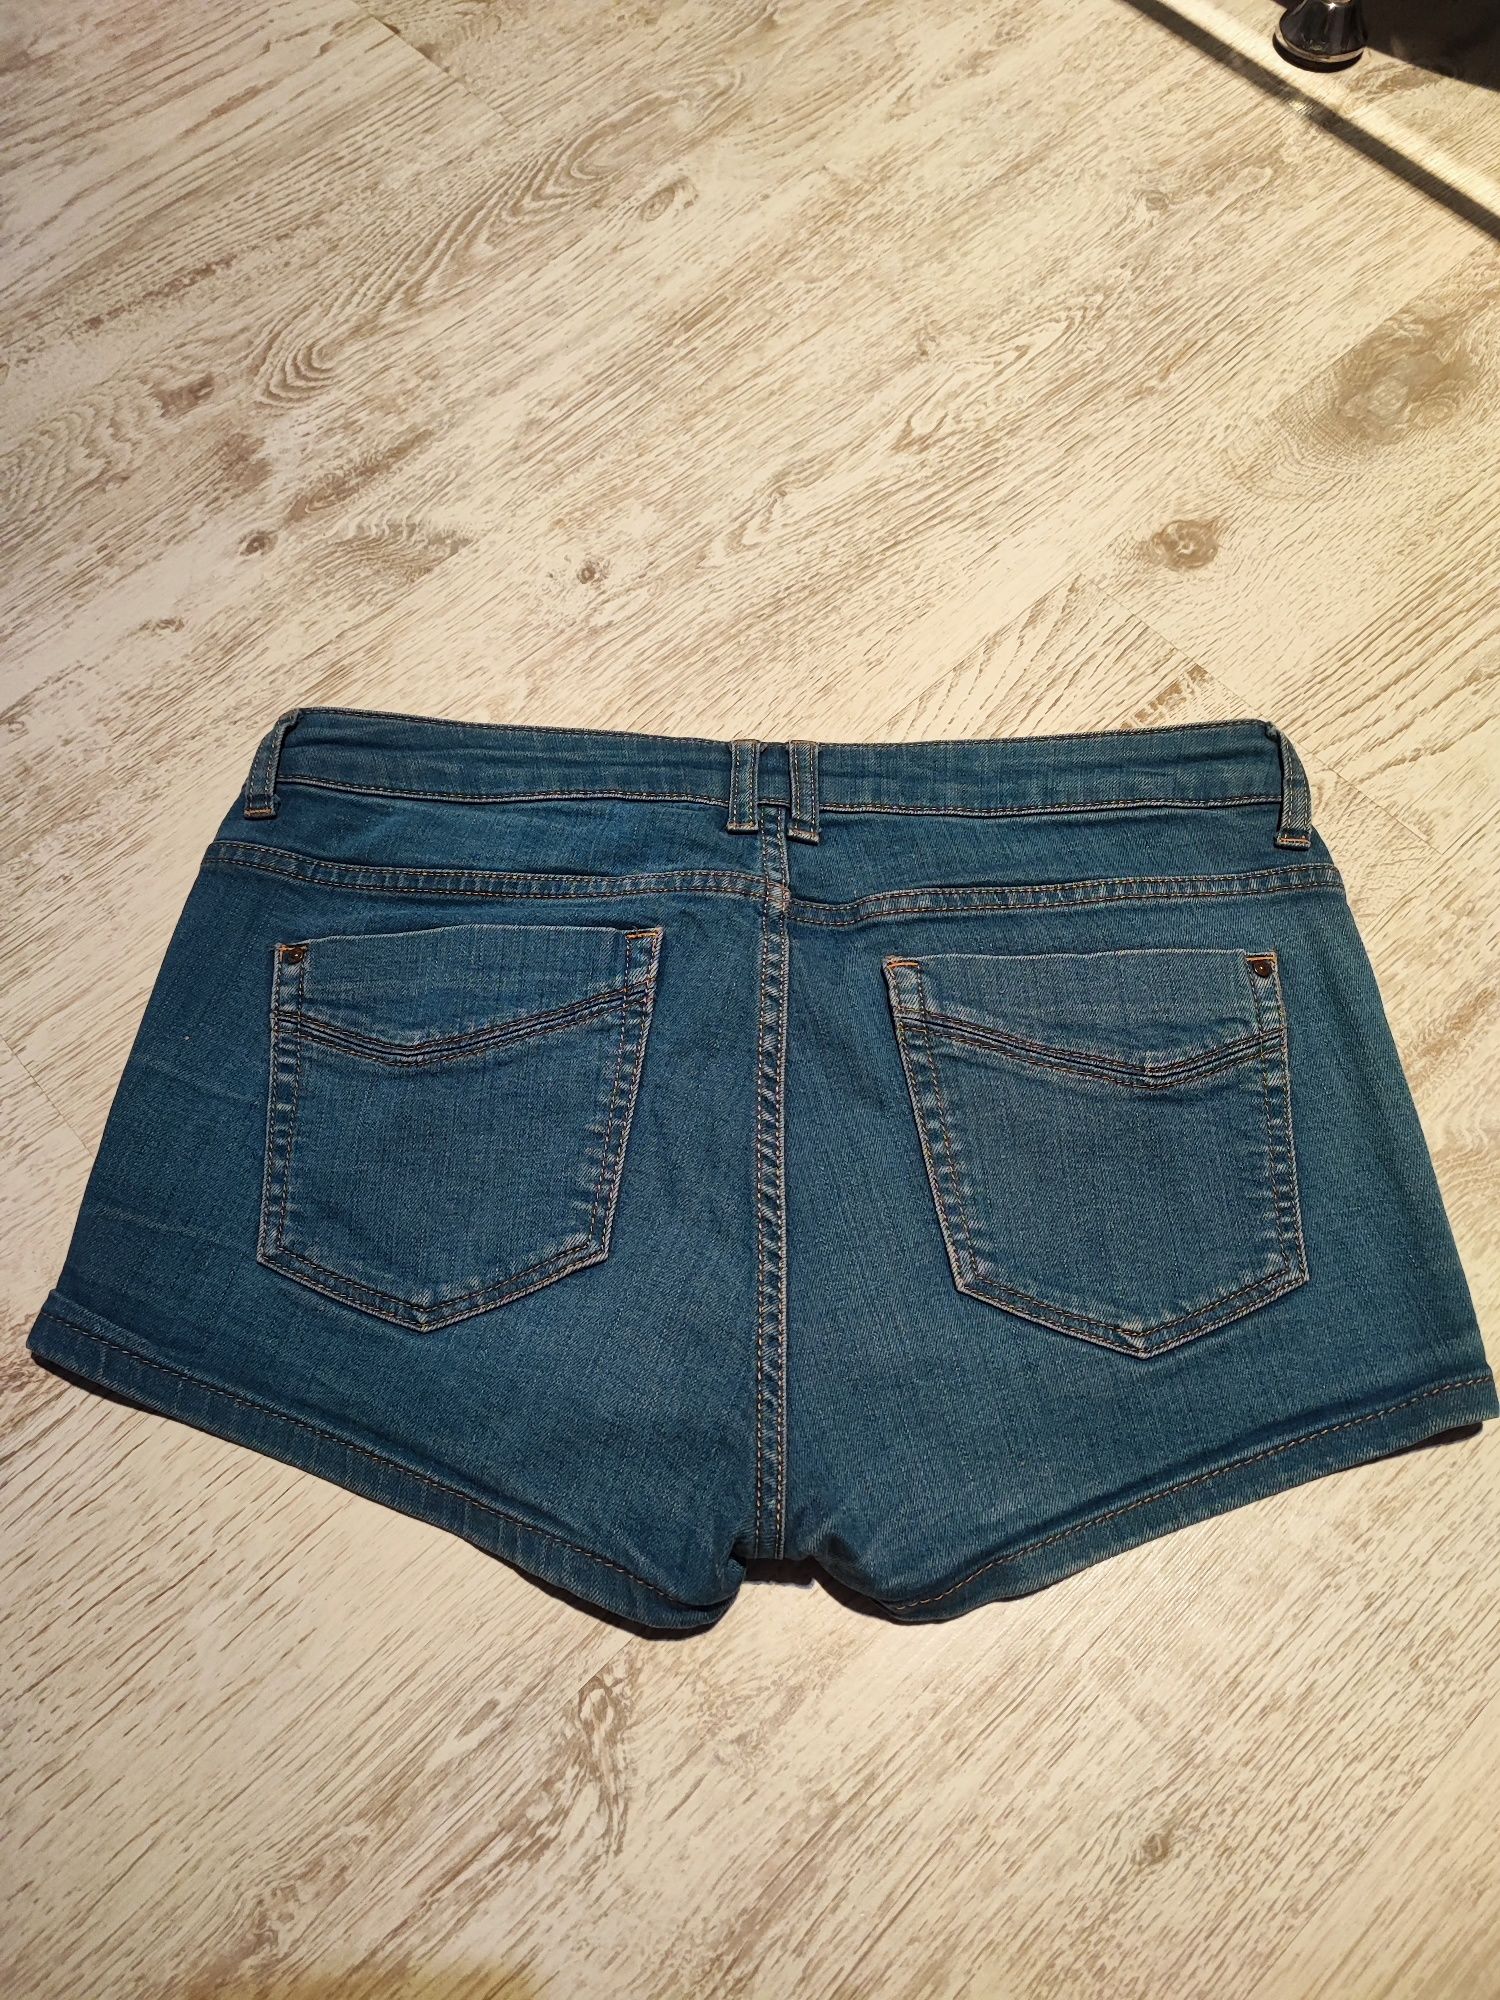 Szorty krótkie spodenki jeansowe r. M